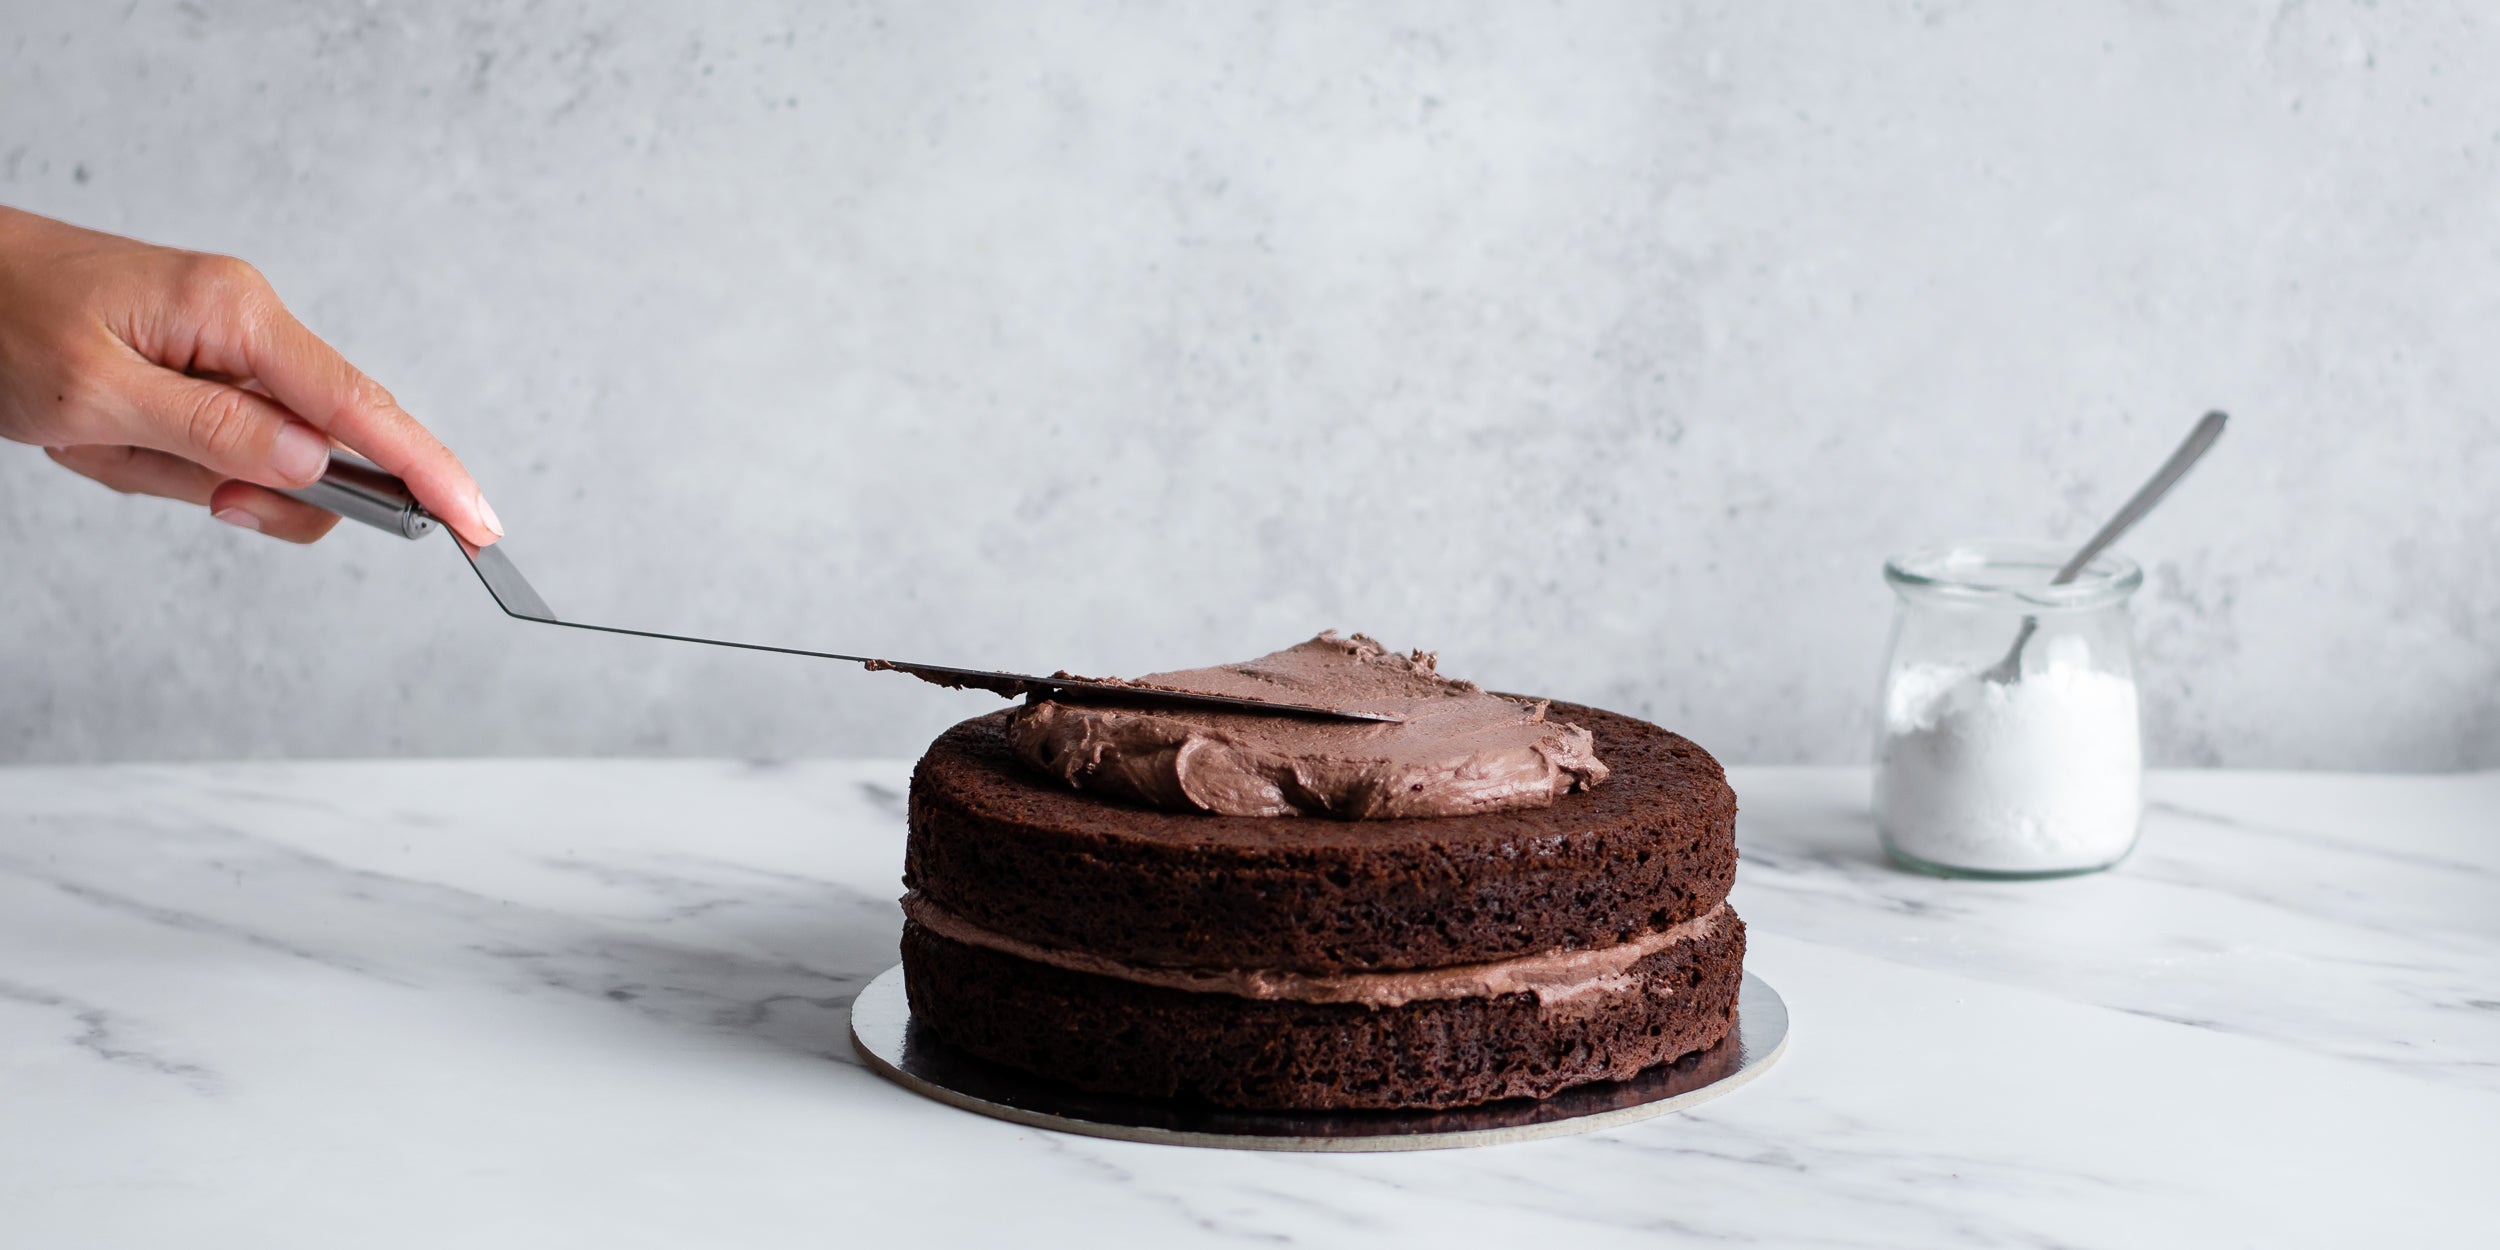 Easy Chocolate Celebration Cake